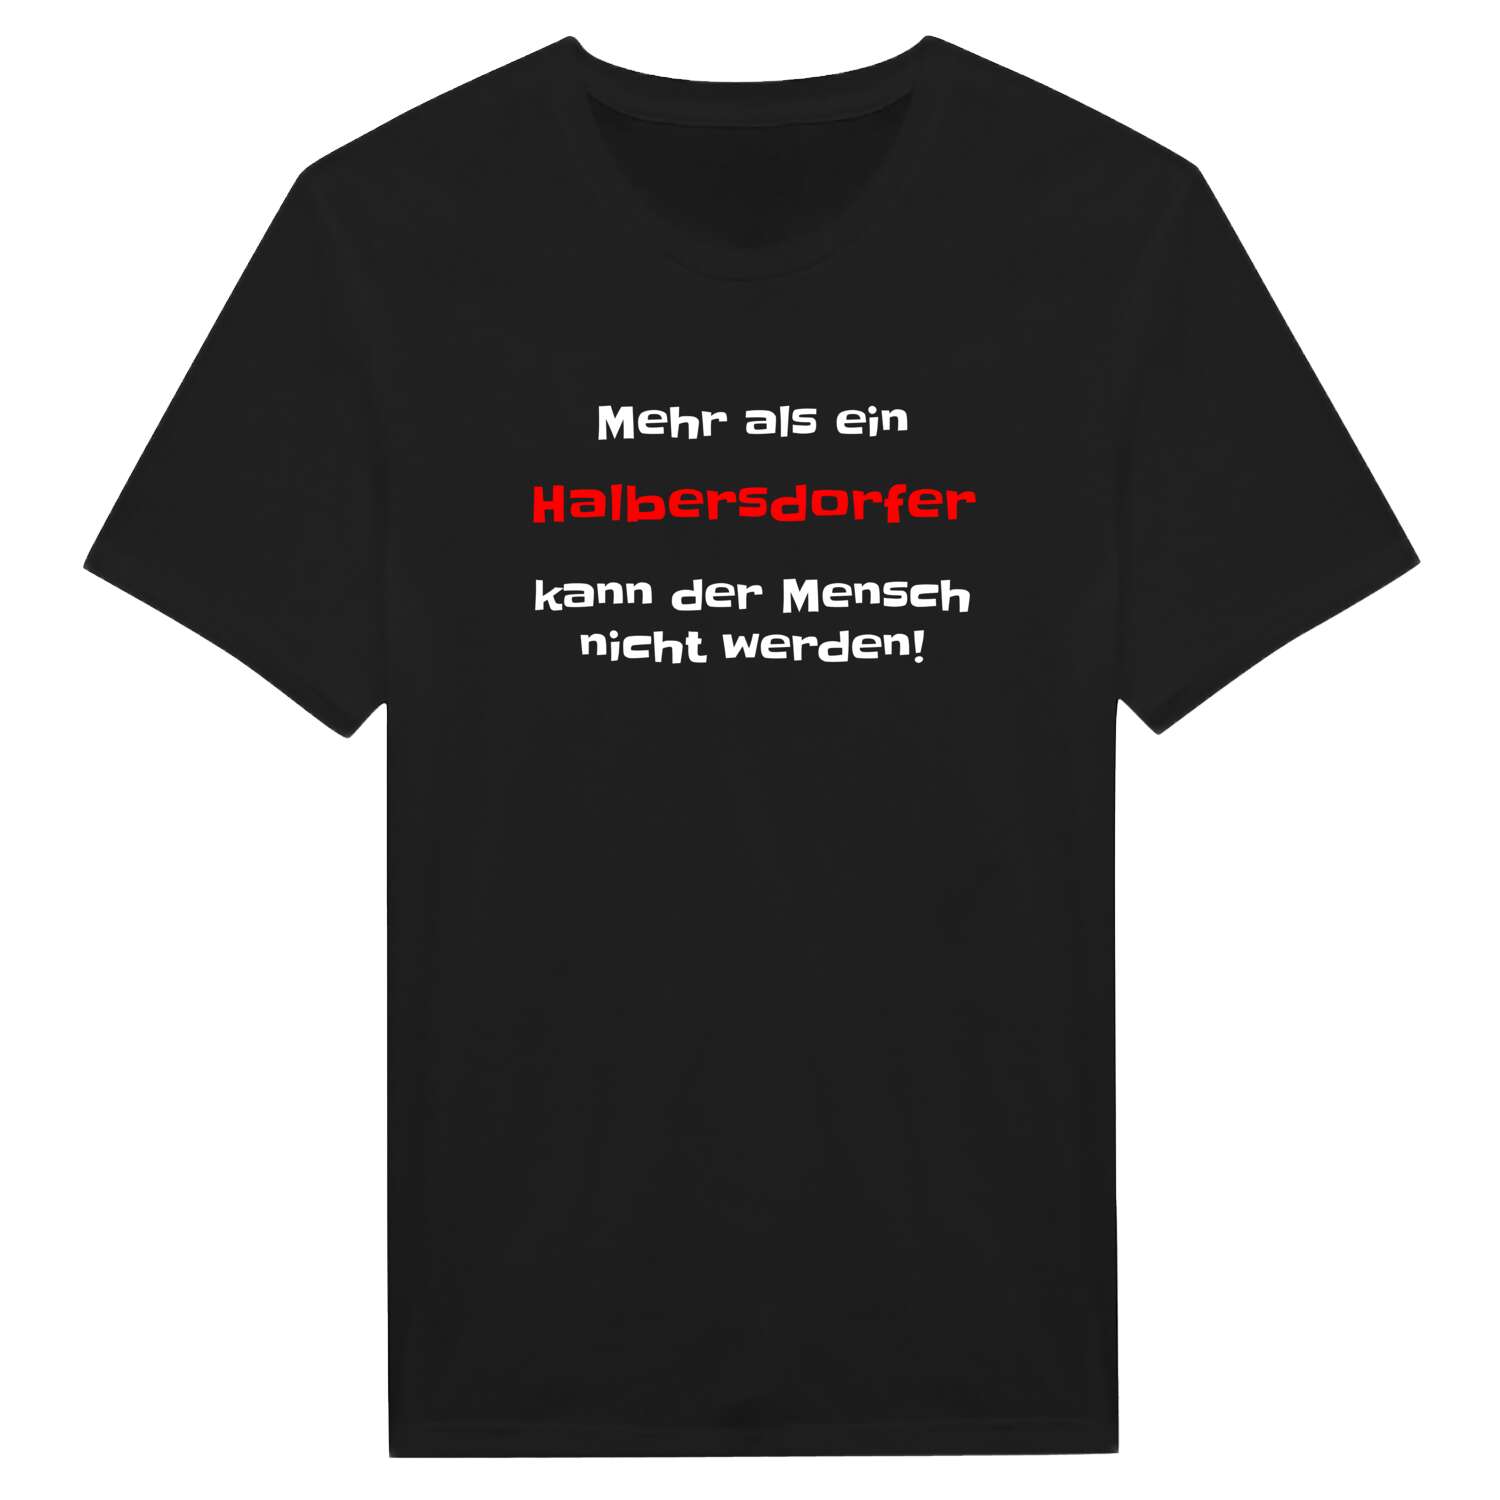 Halbersdorf T-Shirt »Mehr als ein«